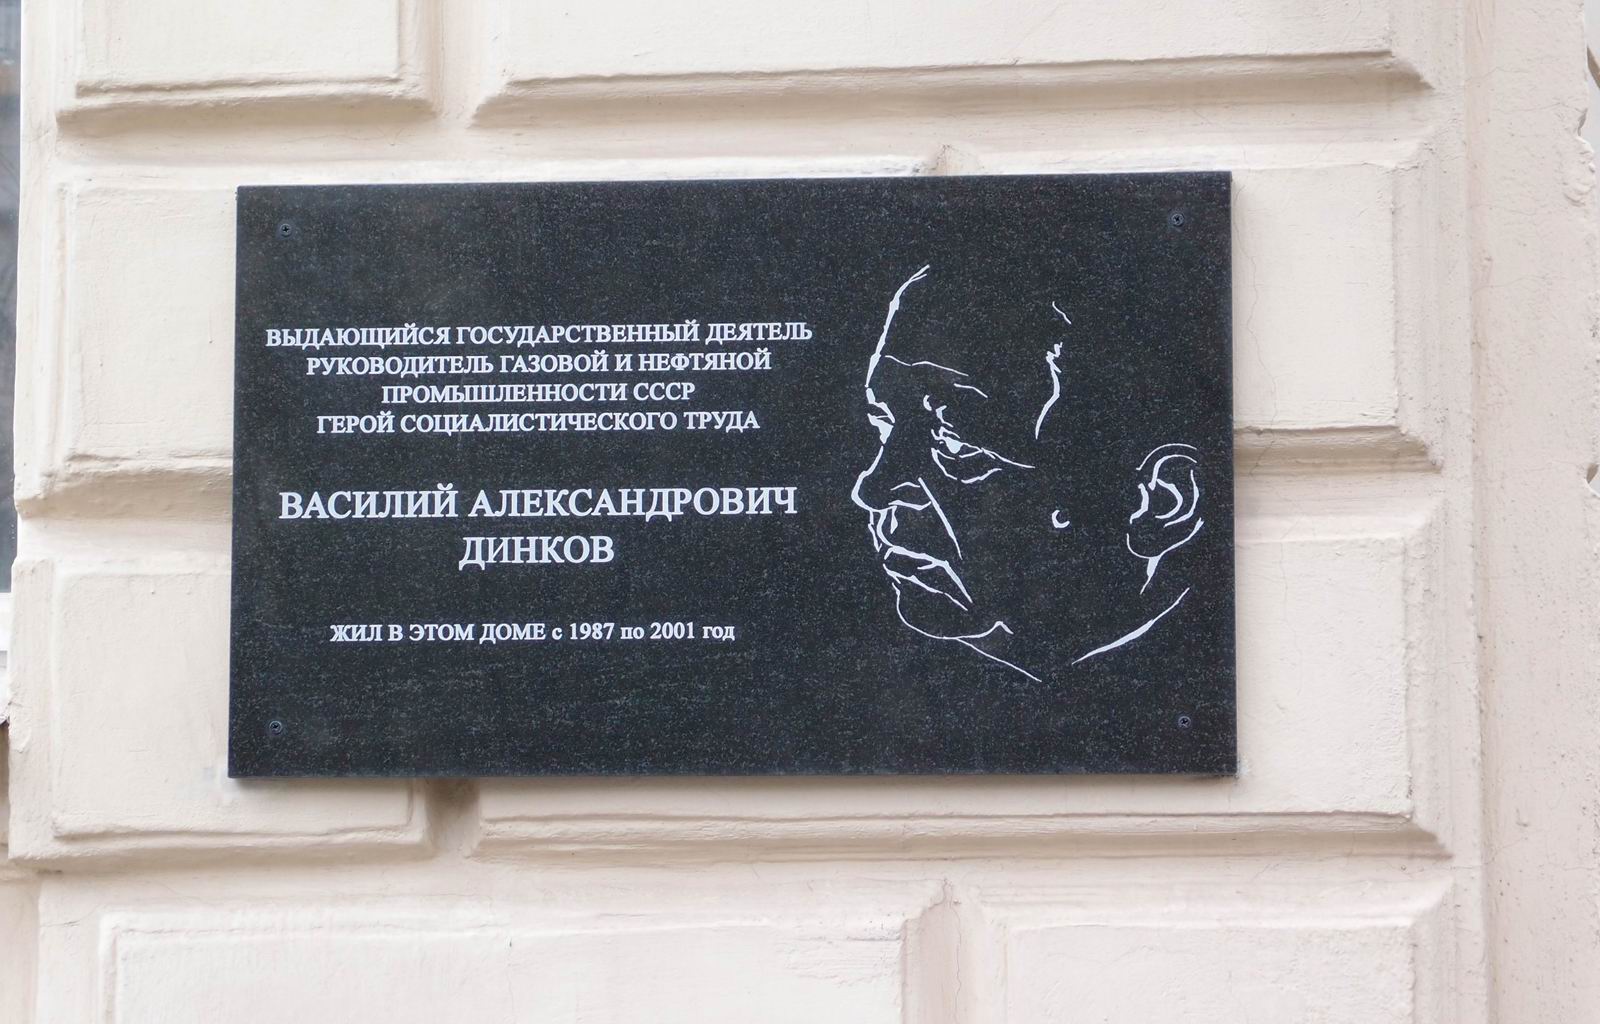 Мемориальная доска Динкову В.А. (1924–2001), на улице Спиридоновка, дом 21, открыта в мае 2021.